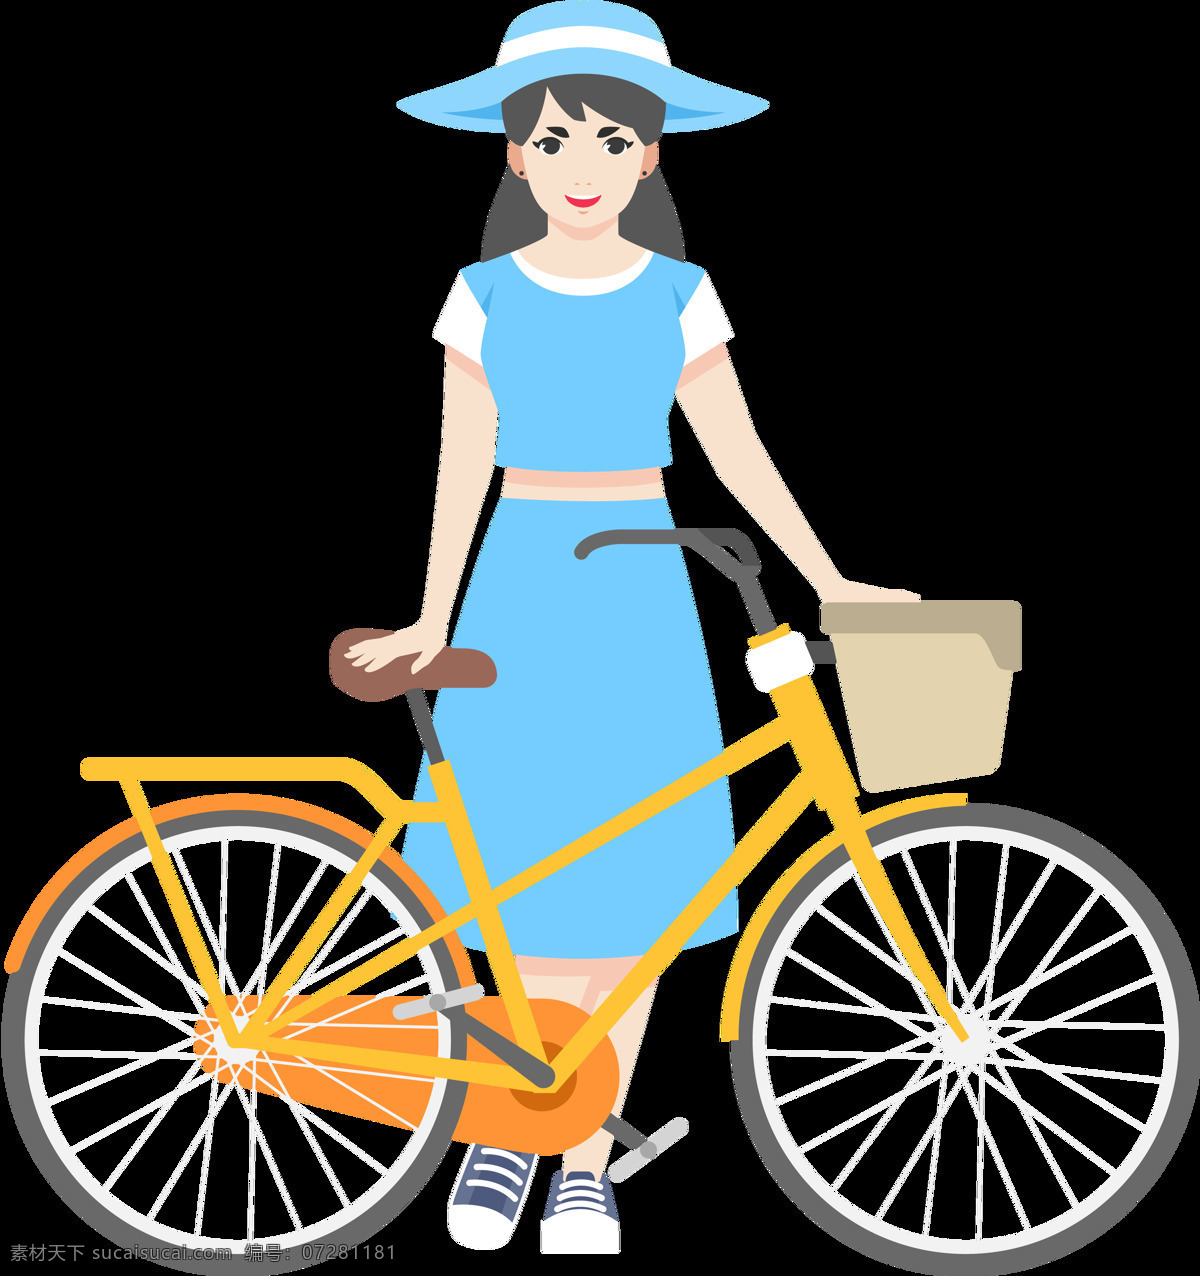 蓝 裙子 女孩 自行车 免 抠 透明 图 层 共享单车 女式单车 男式单车 电动车 绿色低碳 绿色环保 环保电动车 健身单车 摩拜 ofo单车 小蓝单车 双人单车 多人单车